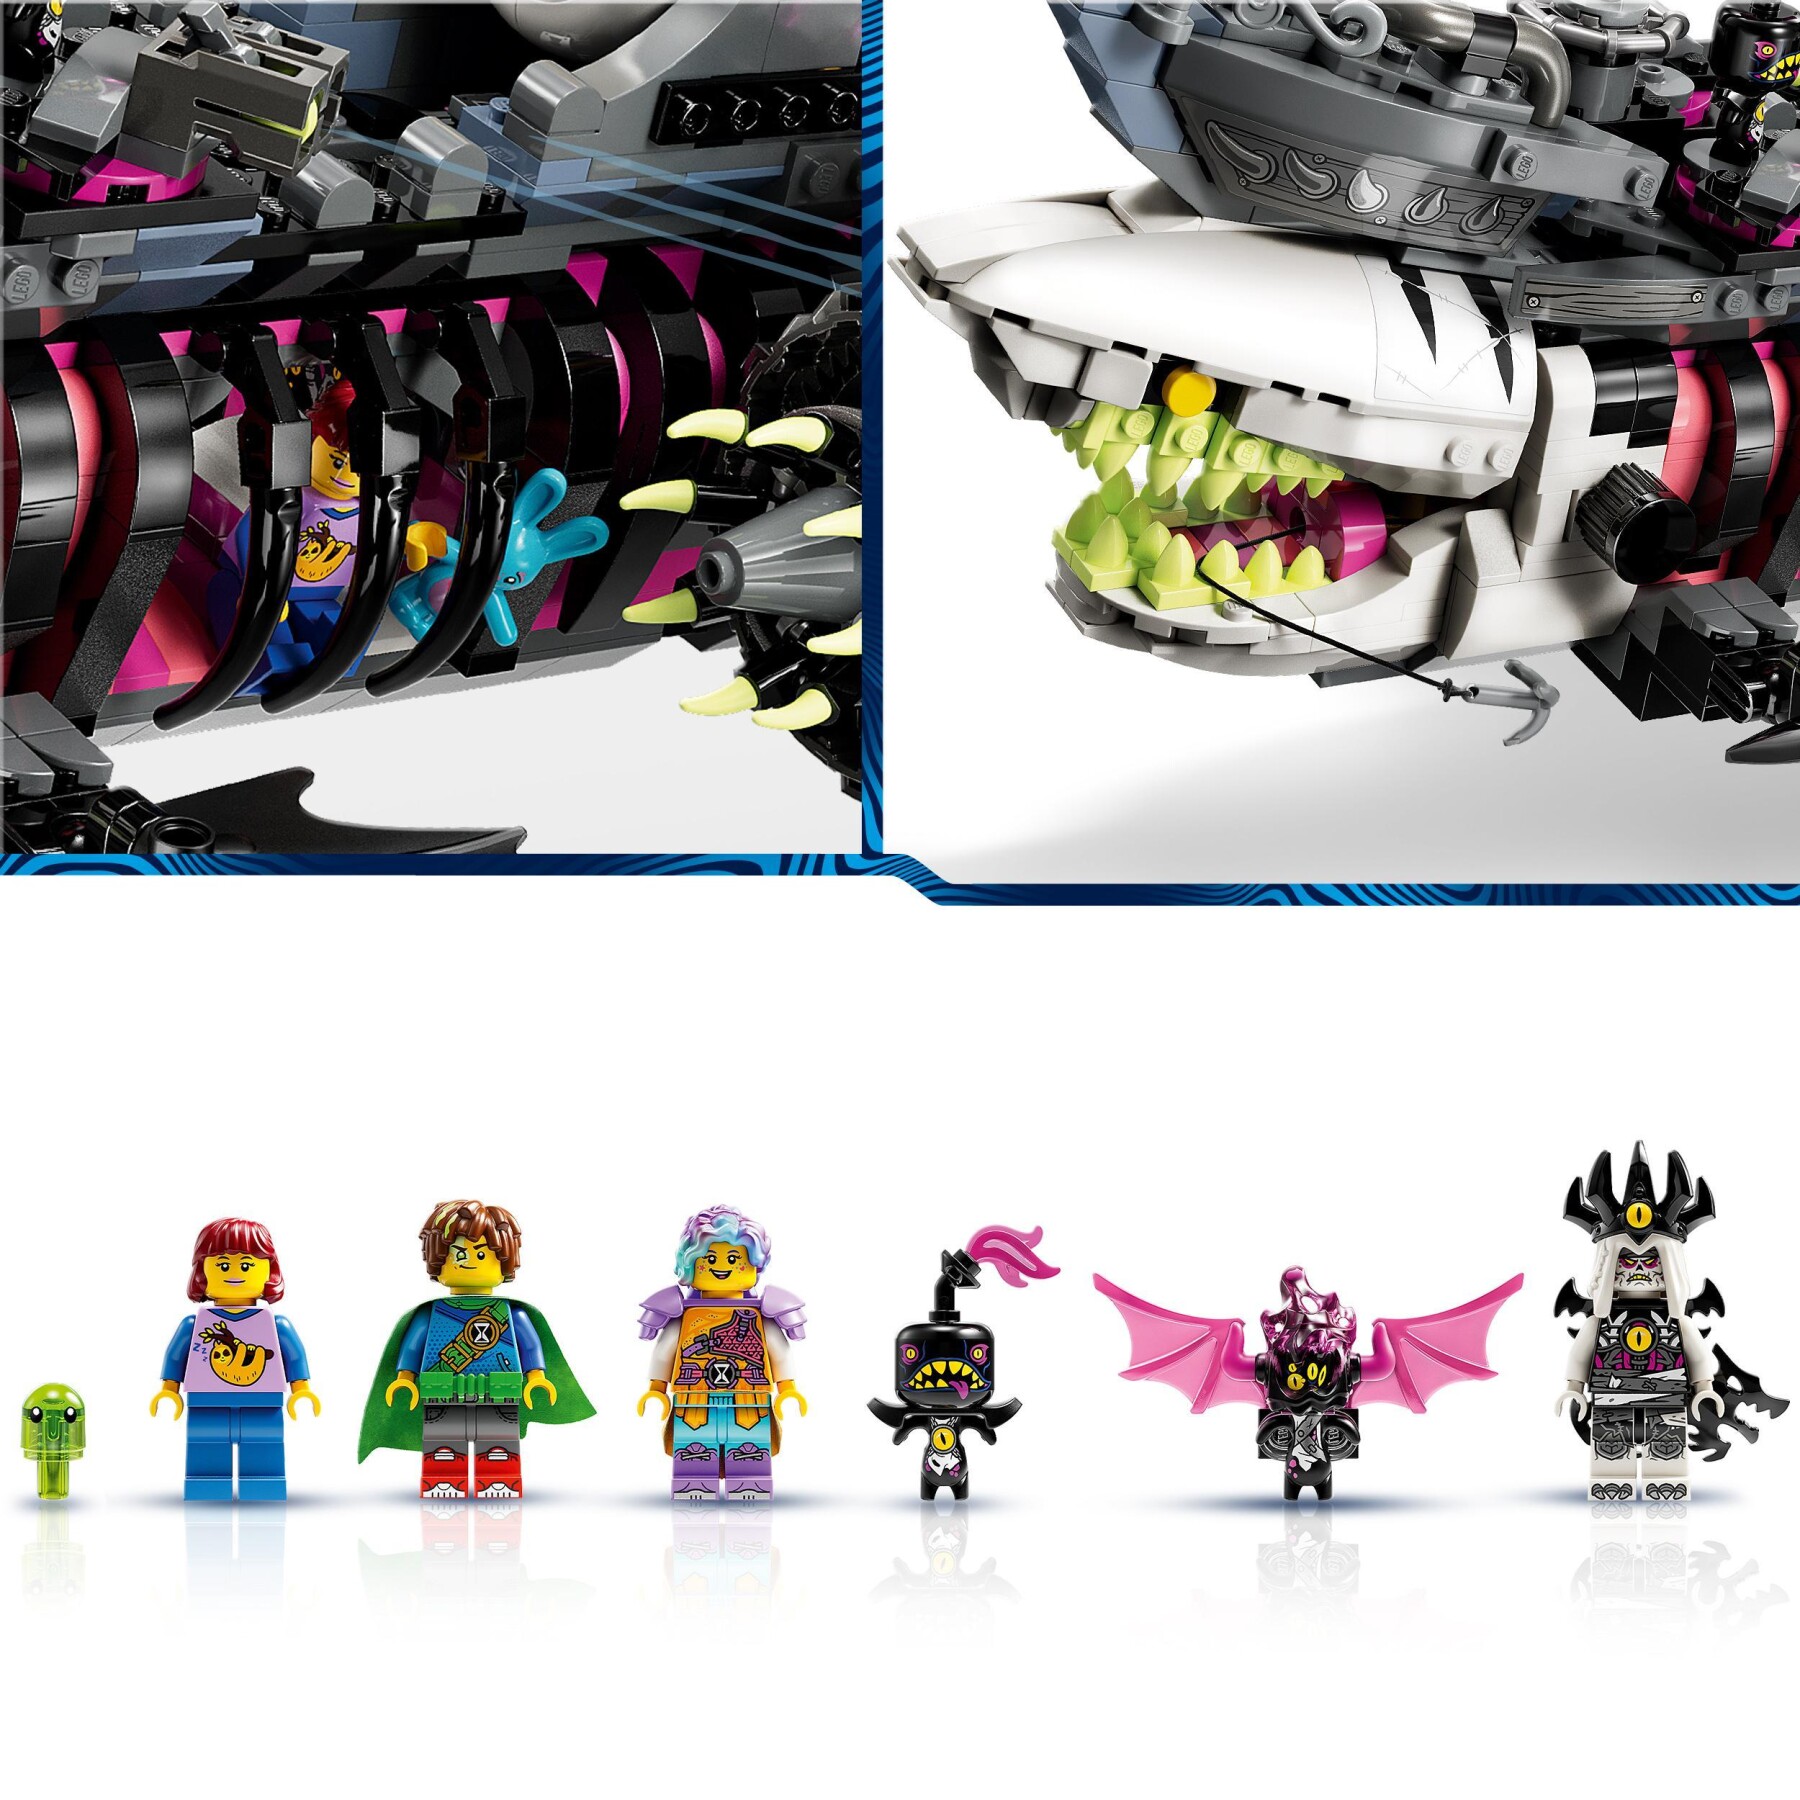 Lego dreamzzz 71469 nave-squalo nightmare, nave pirata giocattolo da costruire in 2 modi con minifigure, giochi per bambini - Lego, LEGO DREAMZZZ